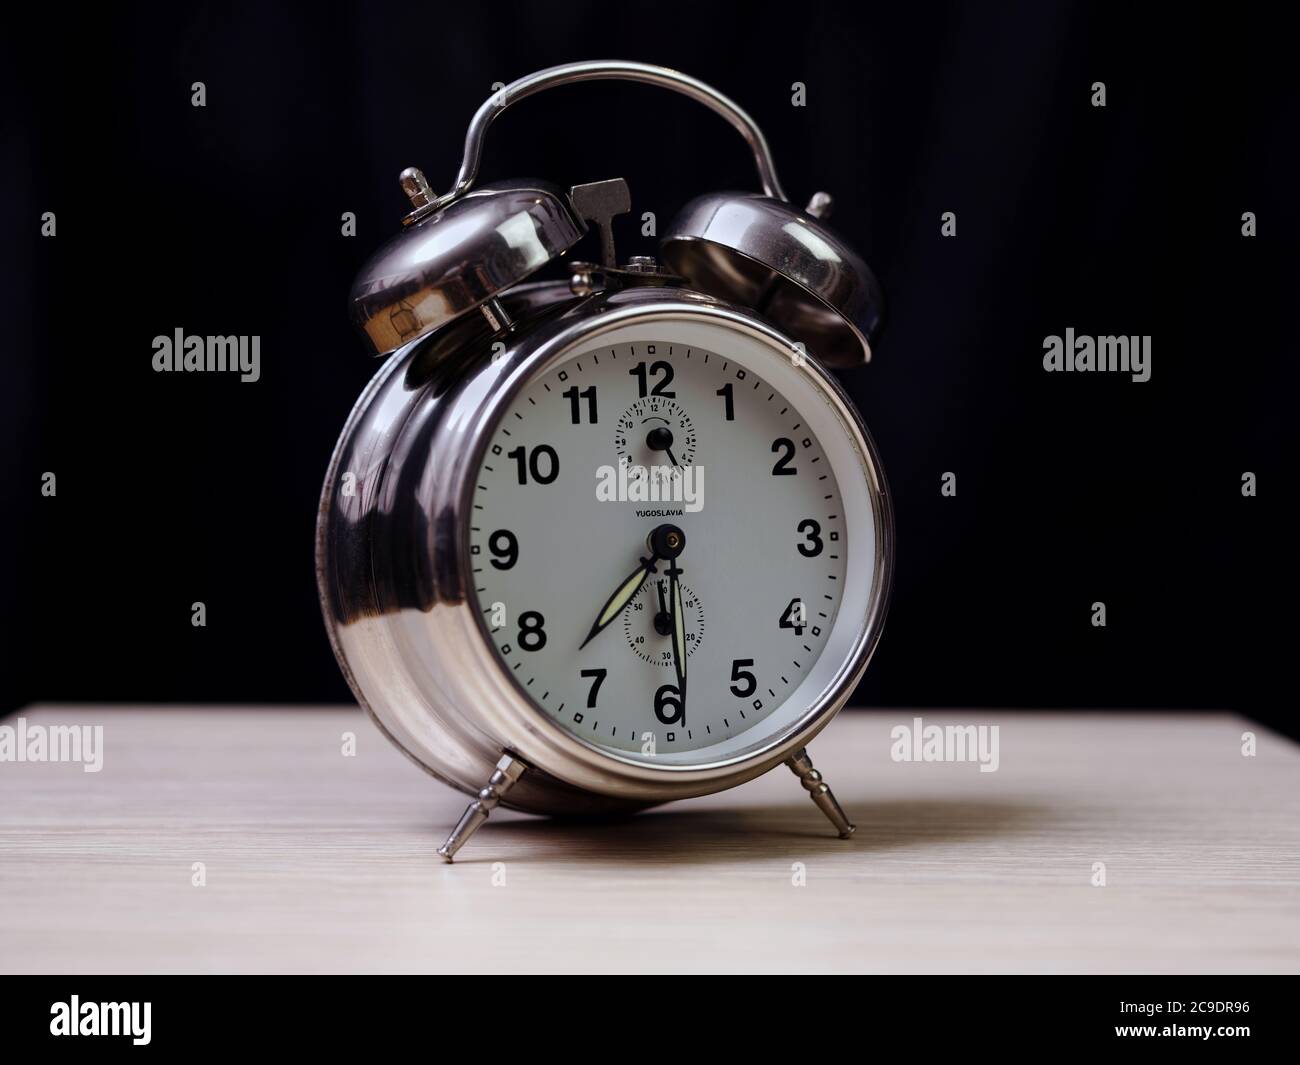 Vintage Wecker, die Zeit ist 7:30 oder pm Stockfotografie - Alamy